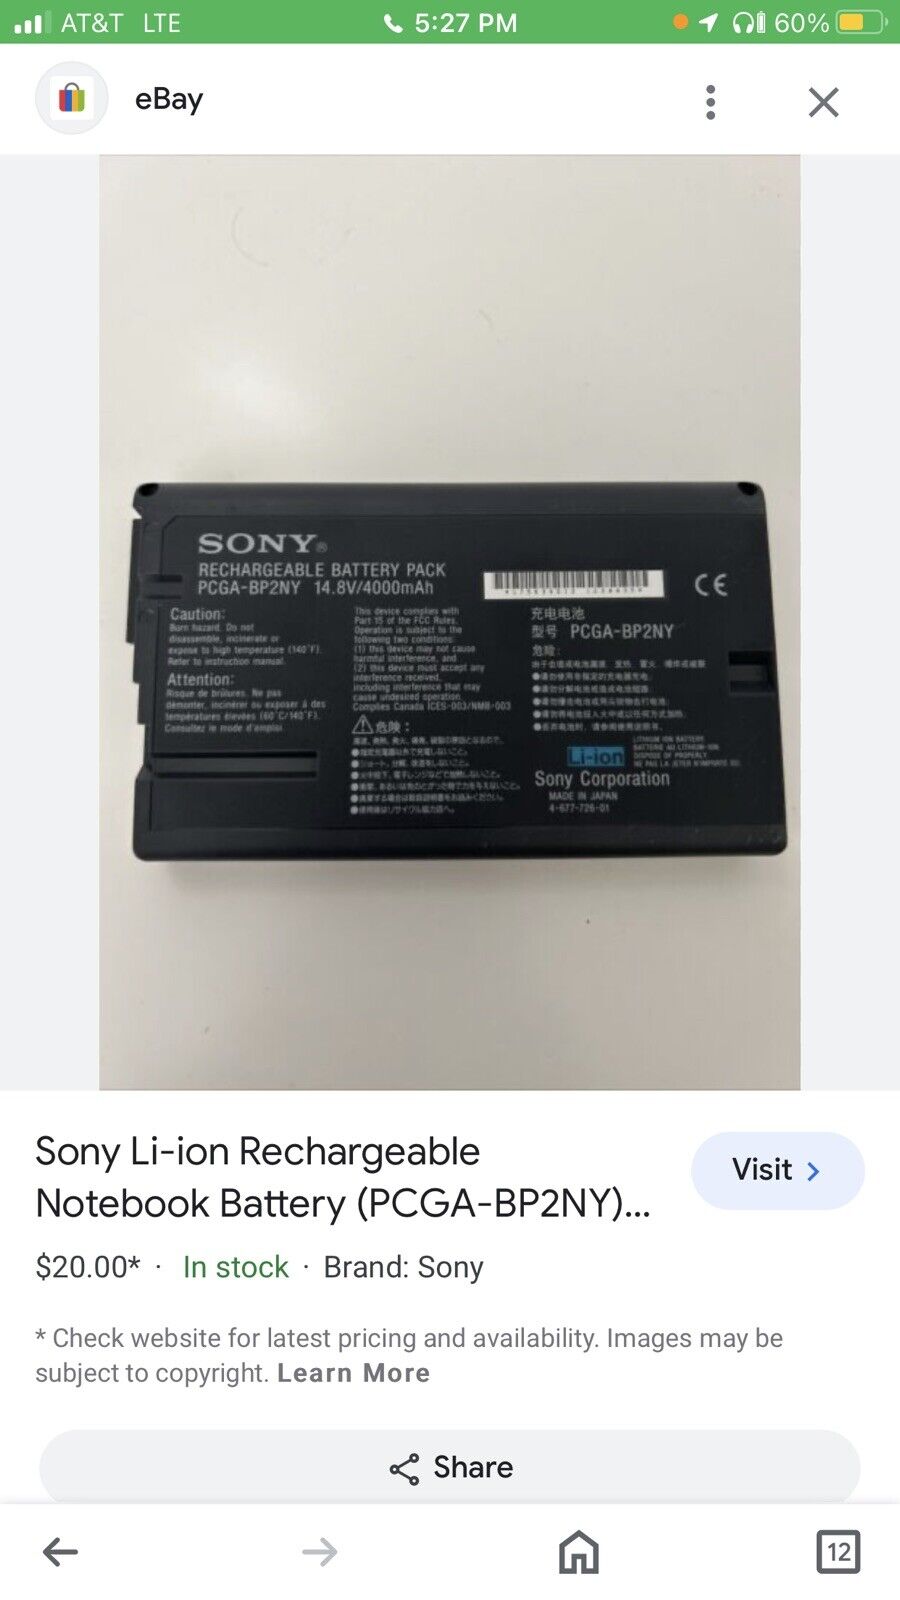 Sony Li-ion Rechargeable Notebook Battery (PCGA-BP2NY).